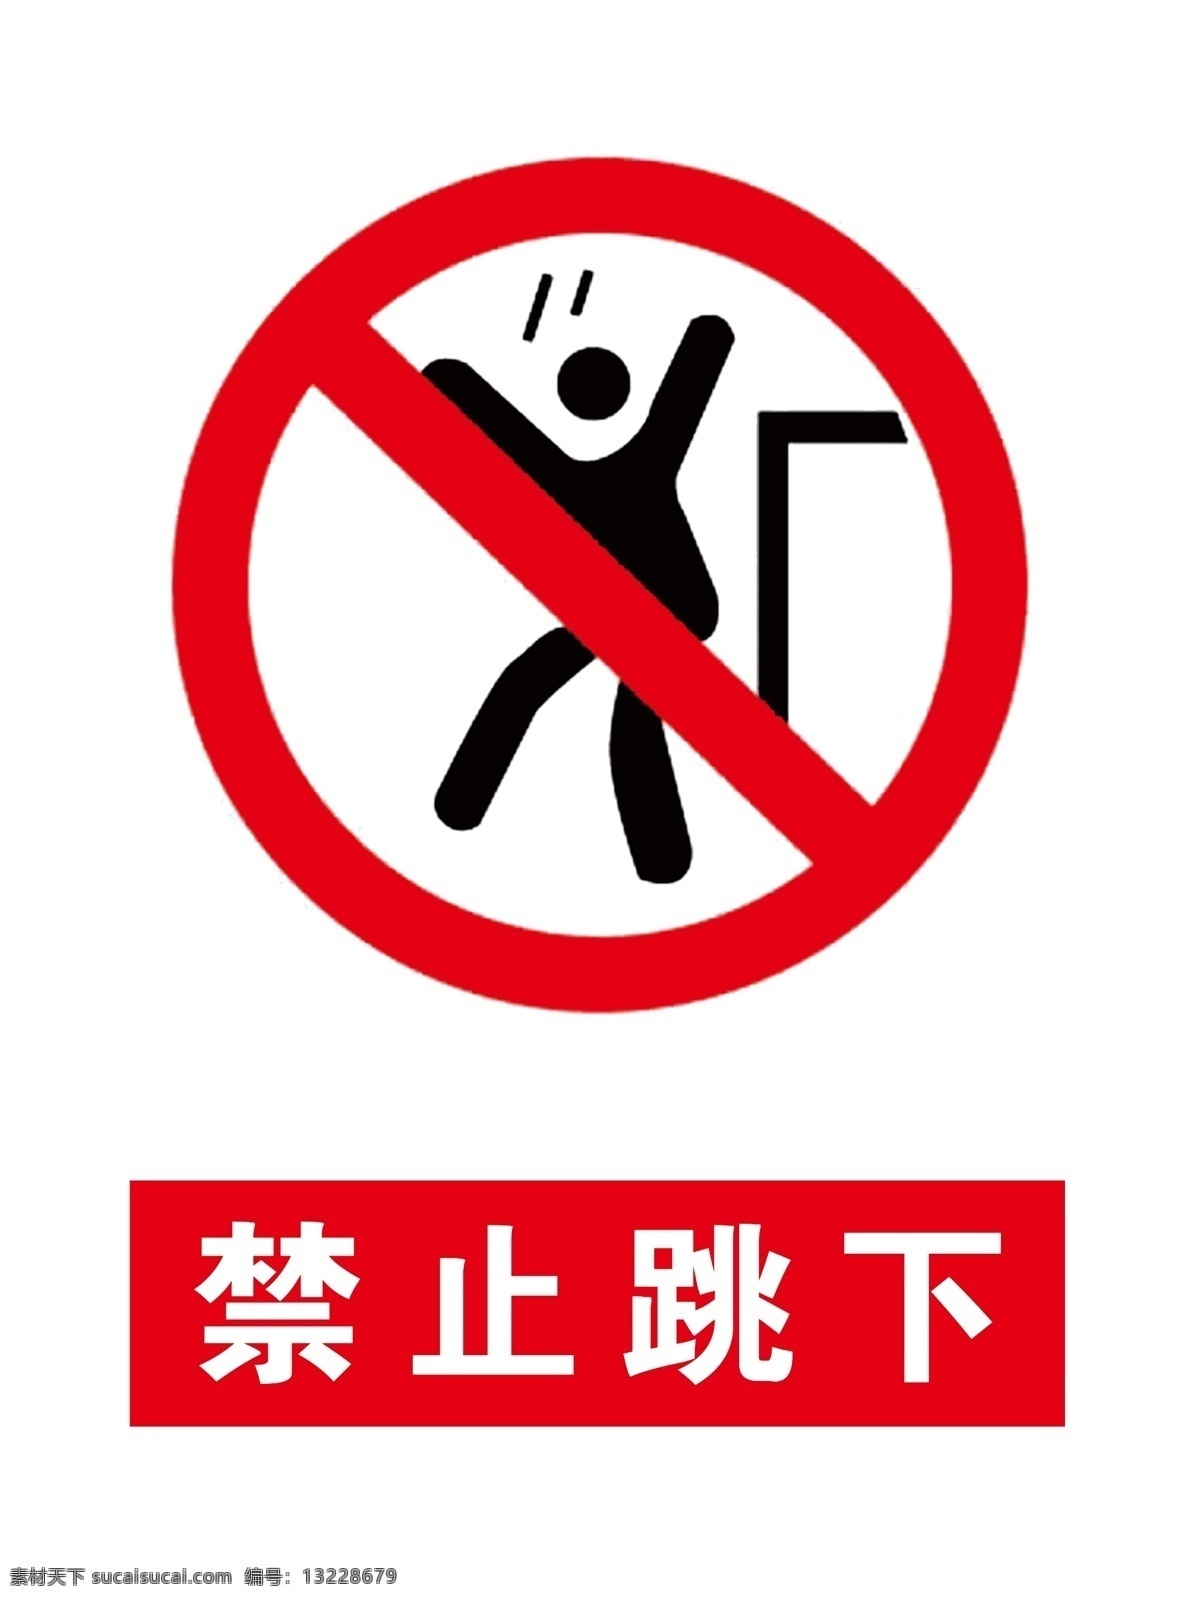 禁止跳下图片 禁止跳下提示 禁止标识 禁止标志 警示标识 警示标志 禁止跳下标志 禁止跳下 注意安全 标志图标 公共标识标志